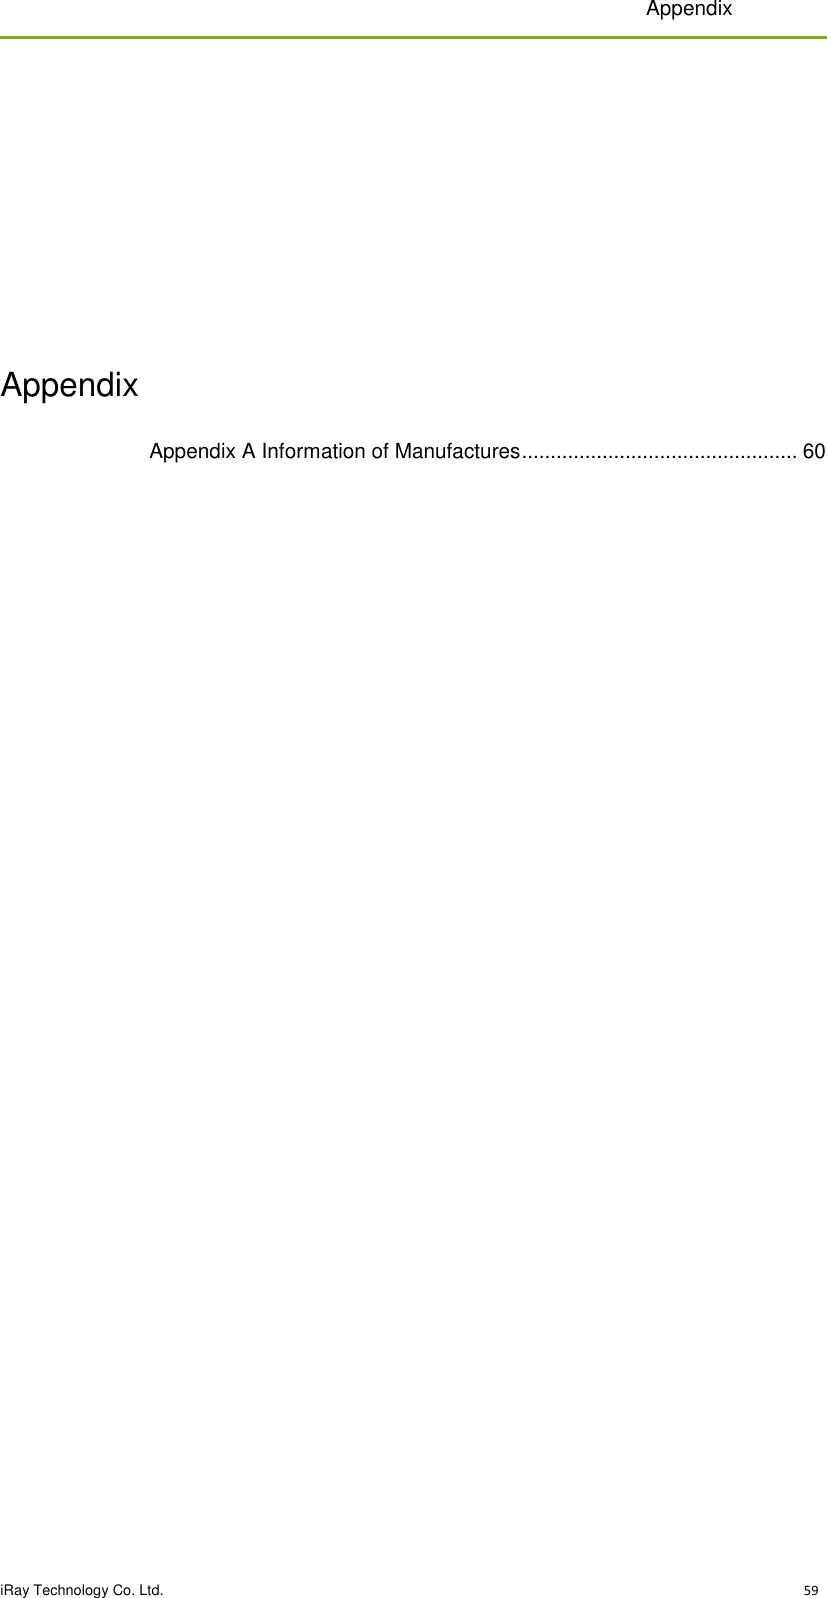 Appendix  iRay Technology Co. Ltd.                                                                                                                                                                                                  59                                                                                                                                                                                                                                                                            Appendix Appendix A Information of Manufactures ................................................ 60         